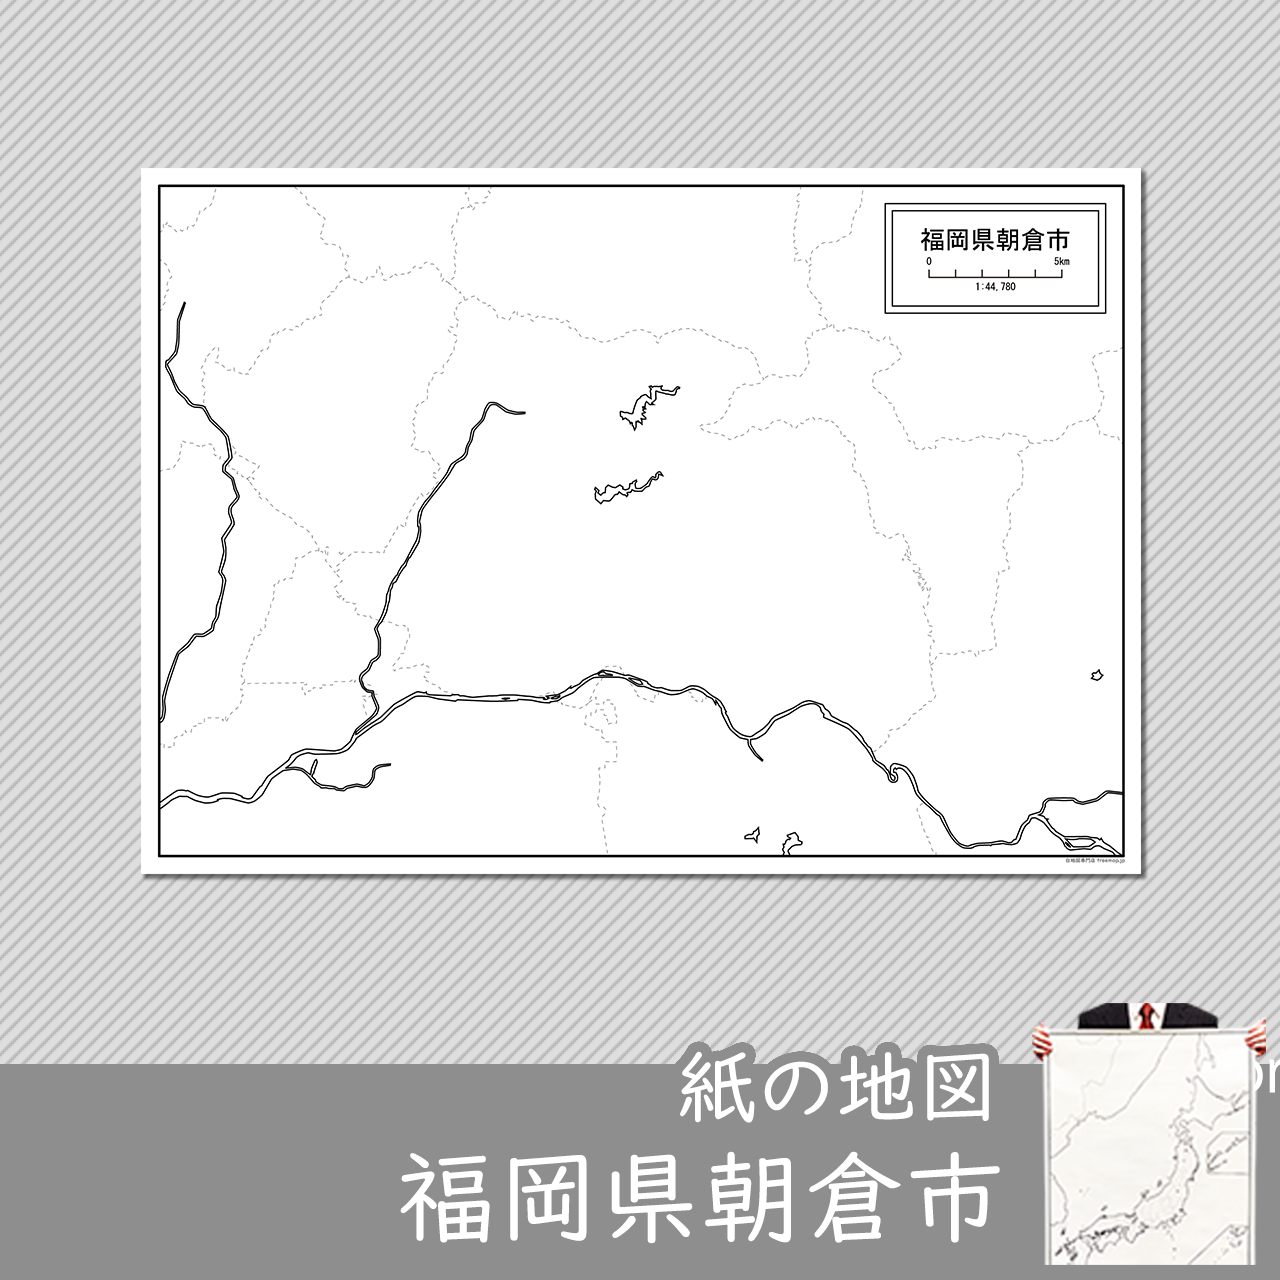 朝倉市の紙の白地図のサムネイル